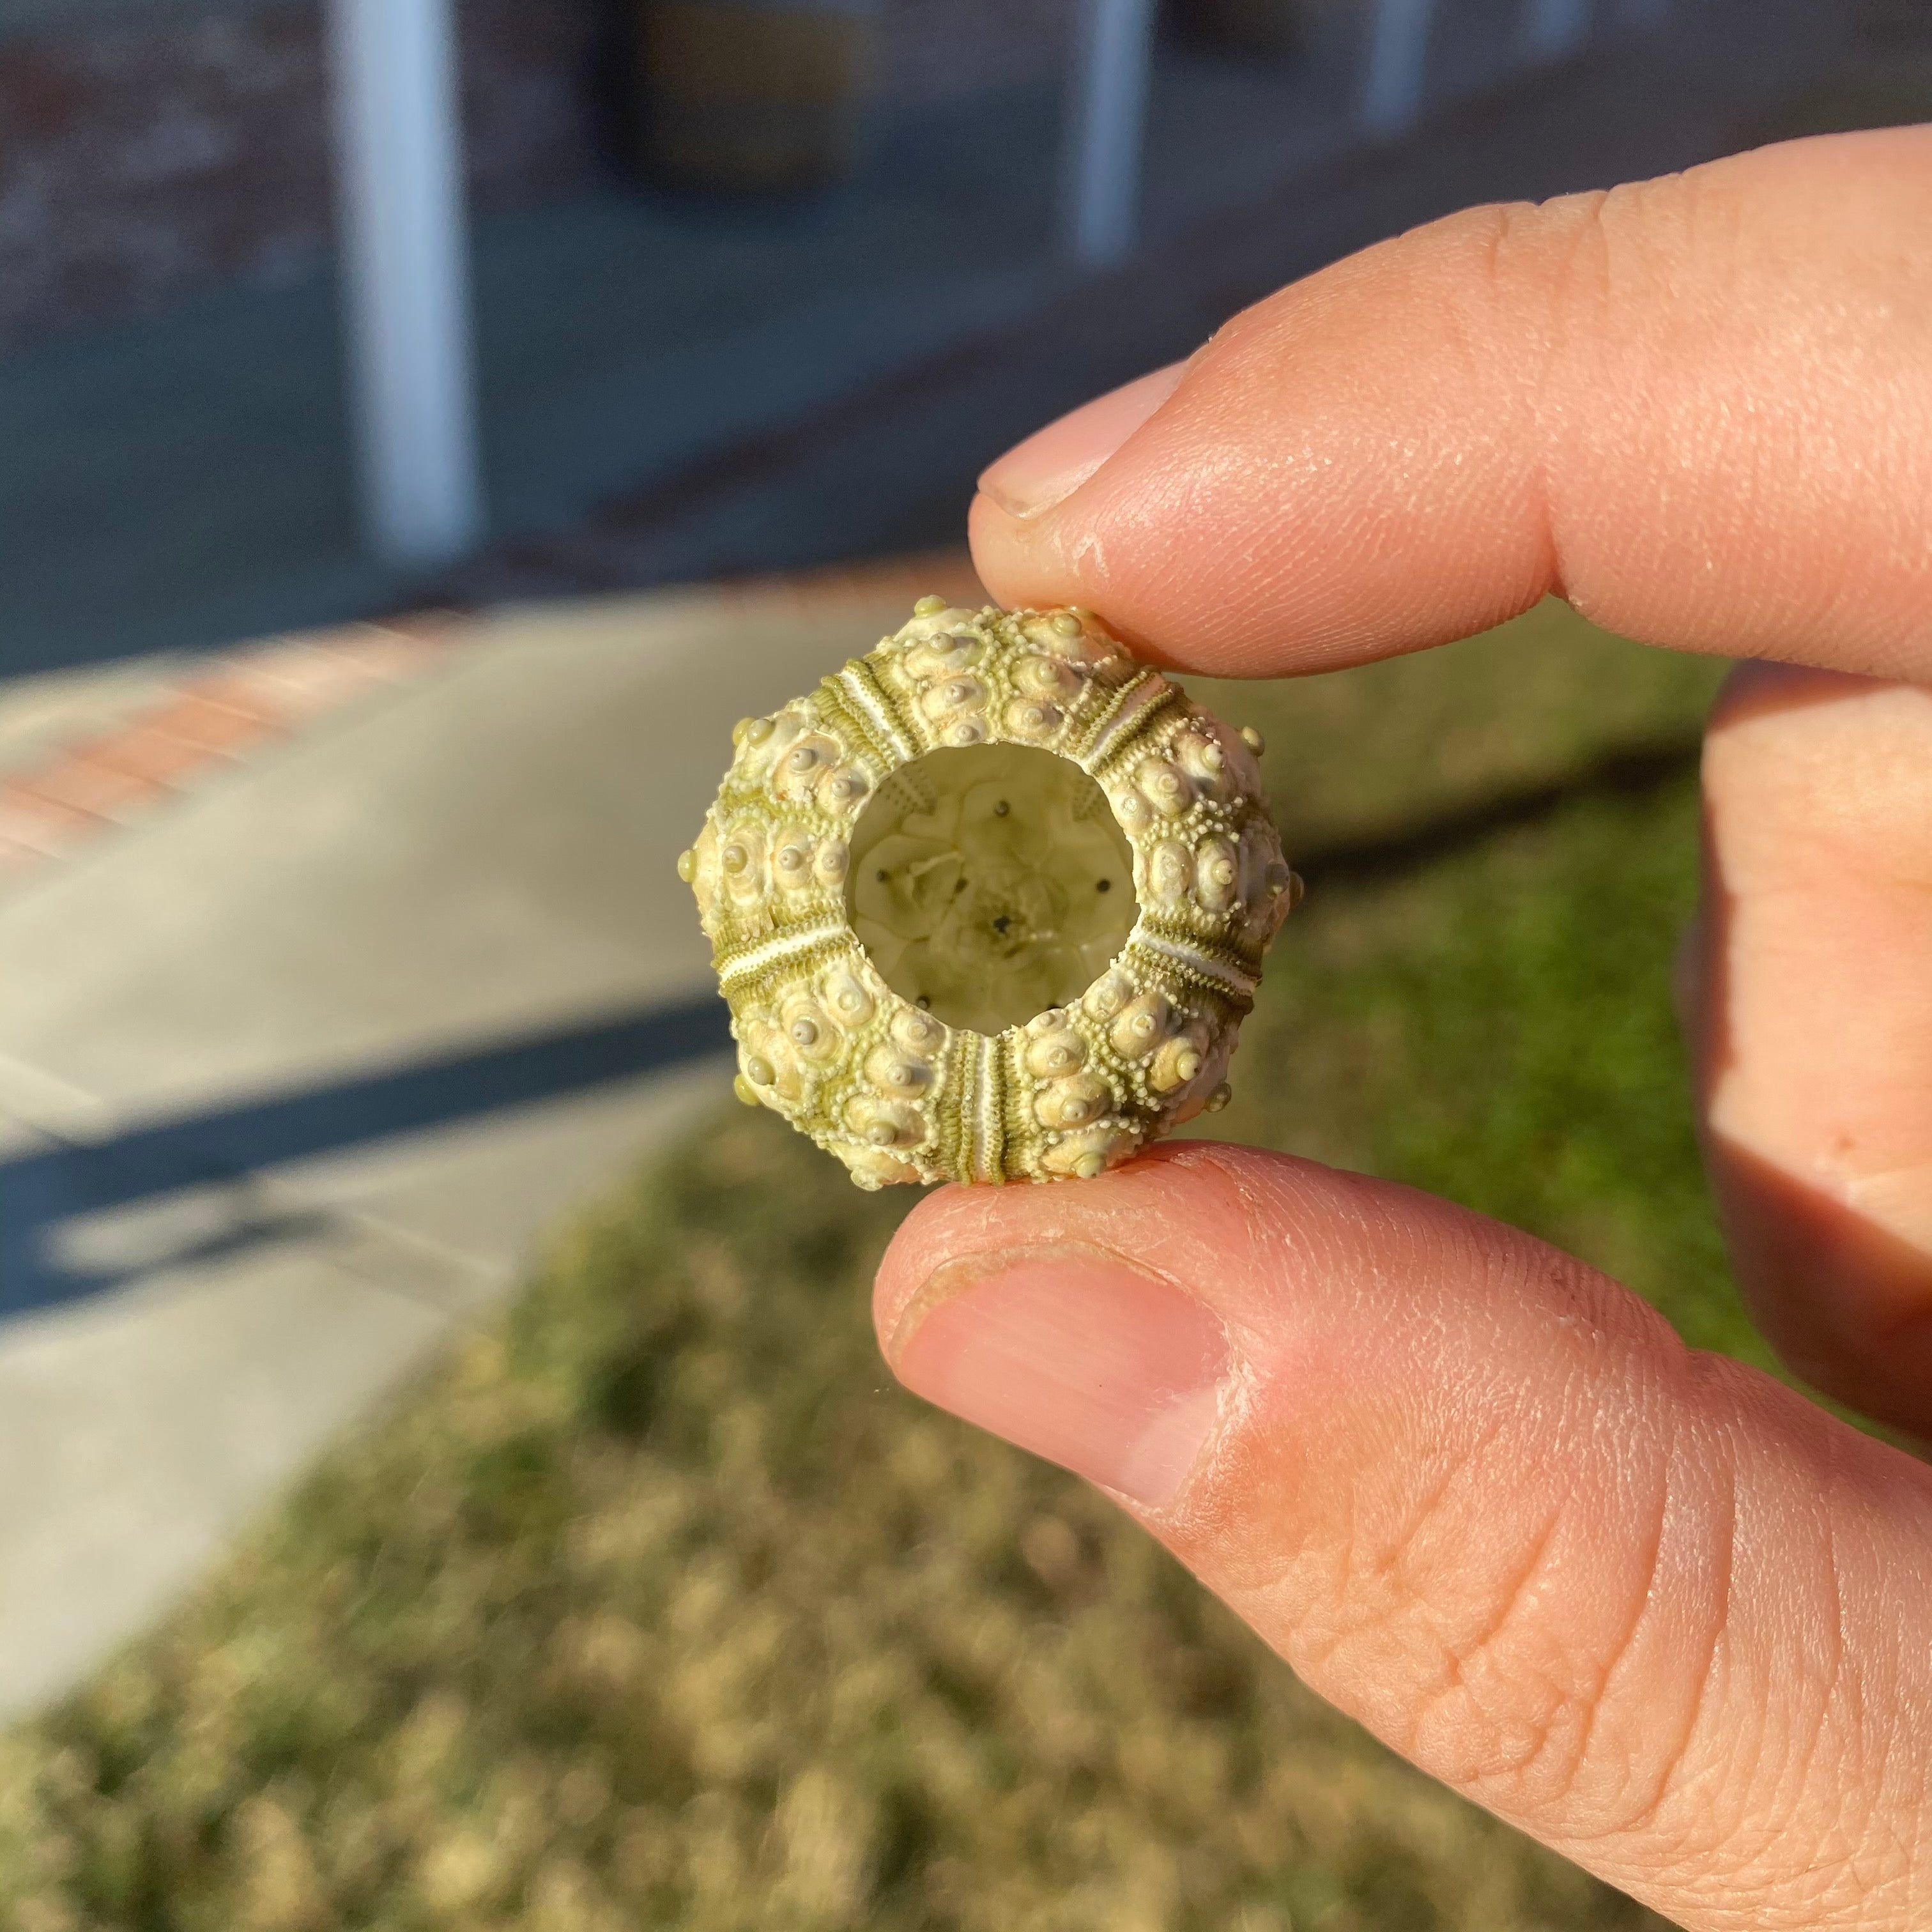 Green Sputnik Sea Urchin Shell Tiny Miniature Display